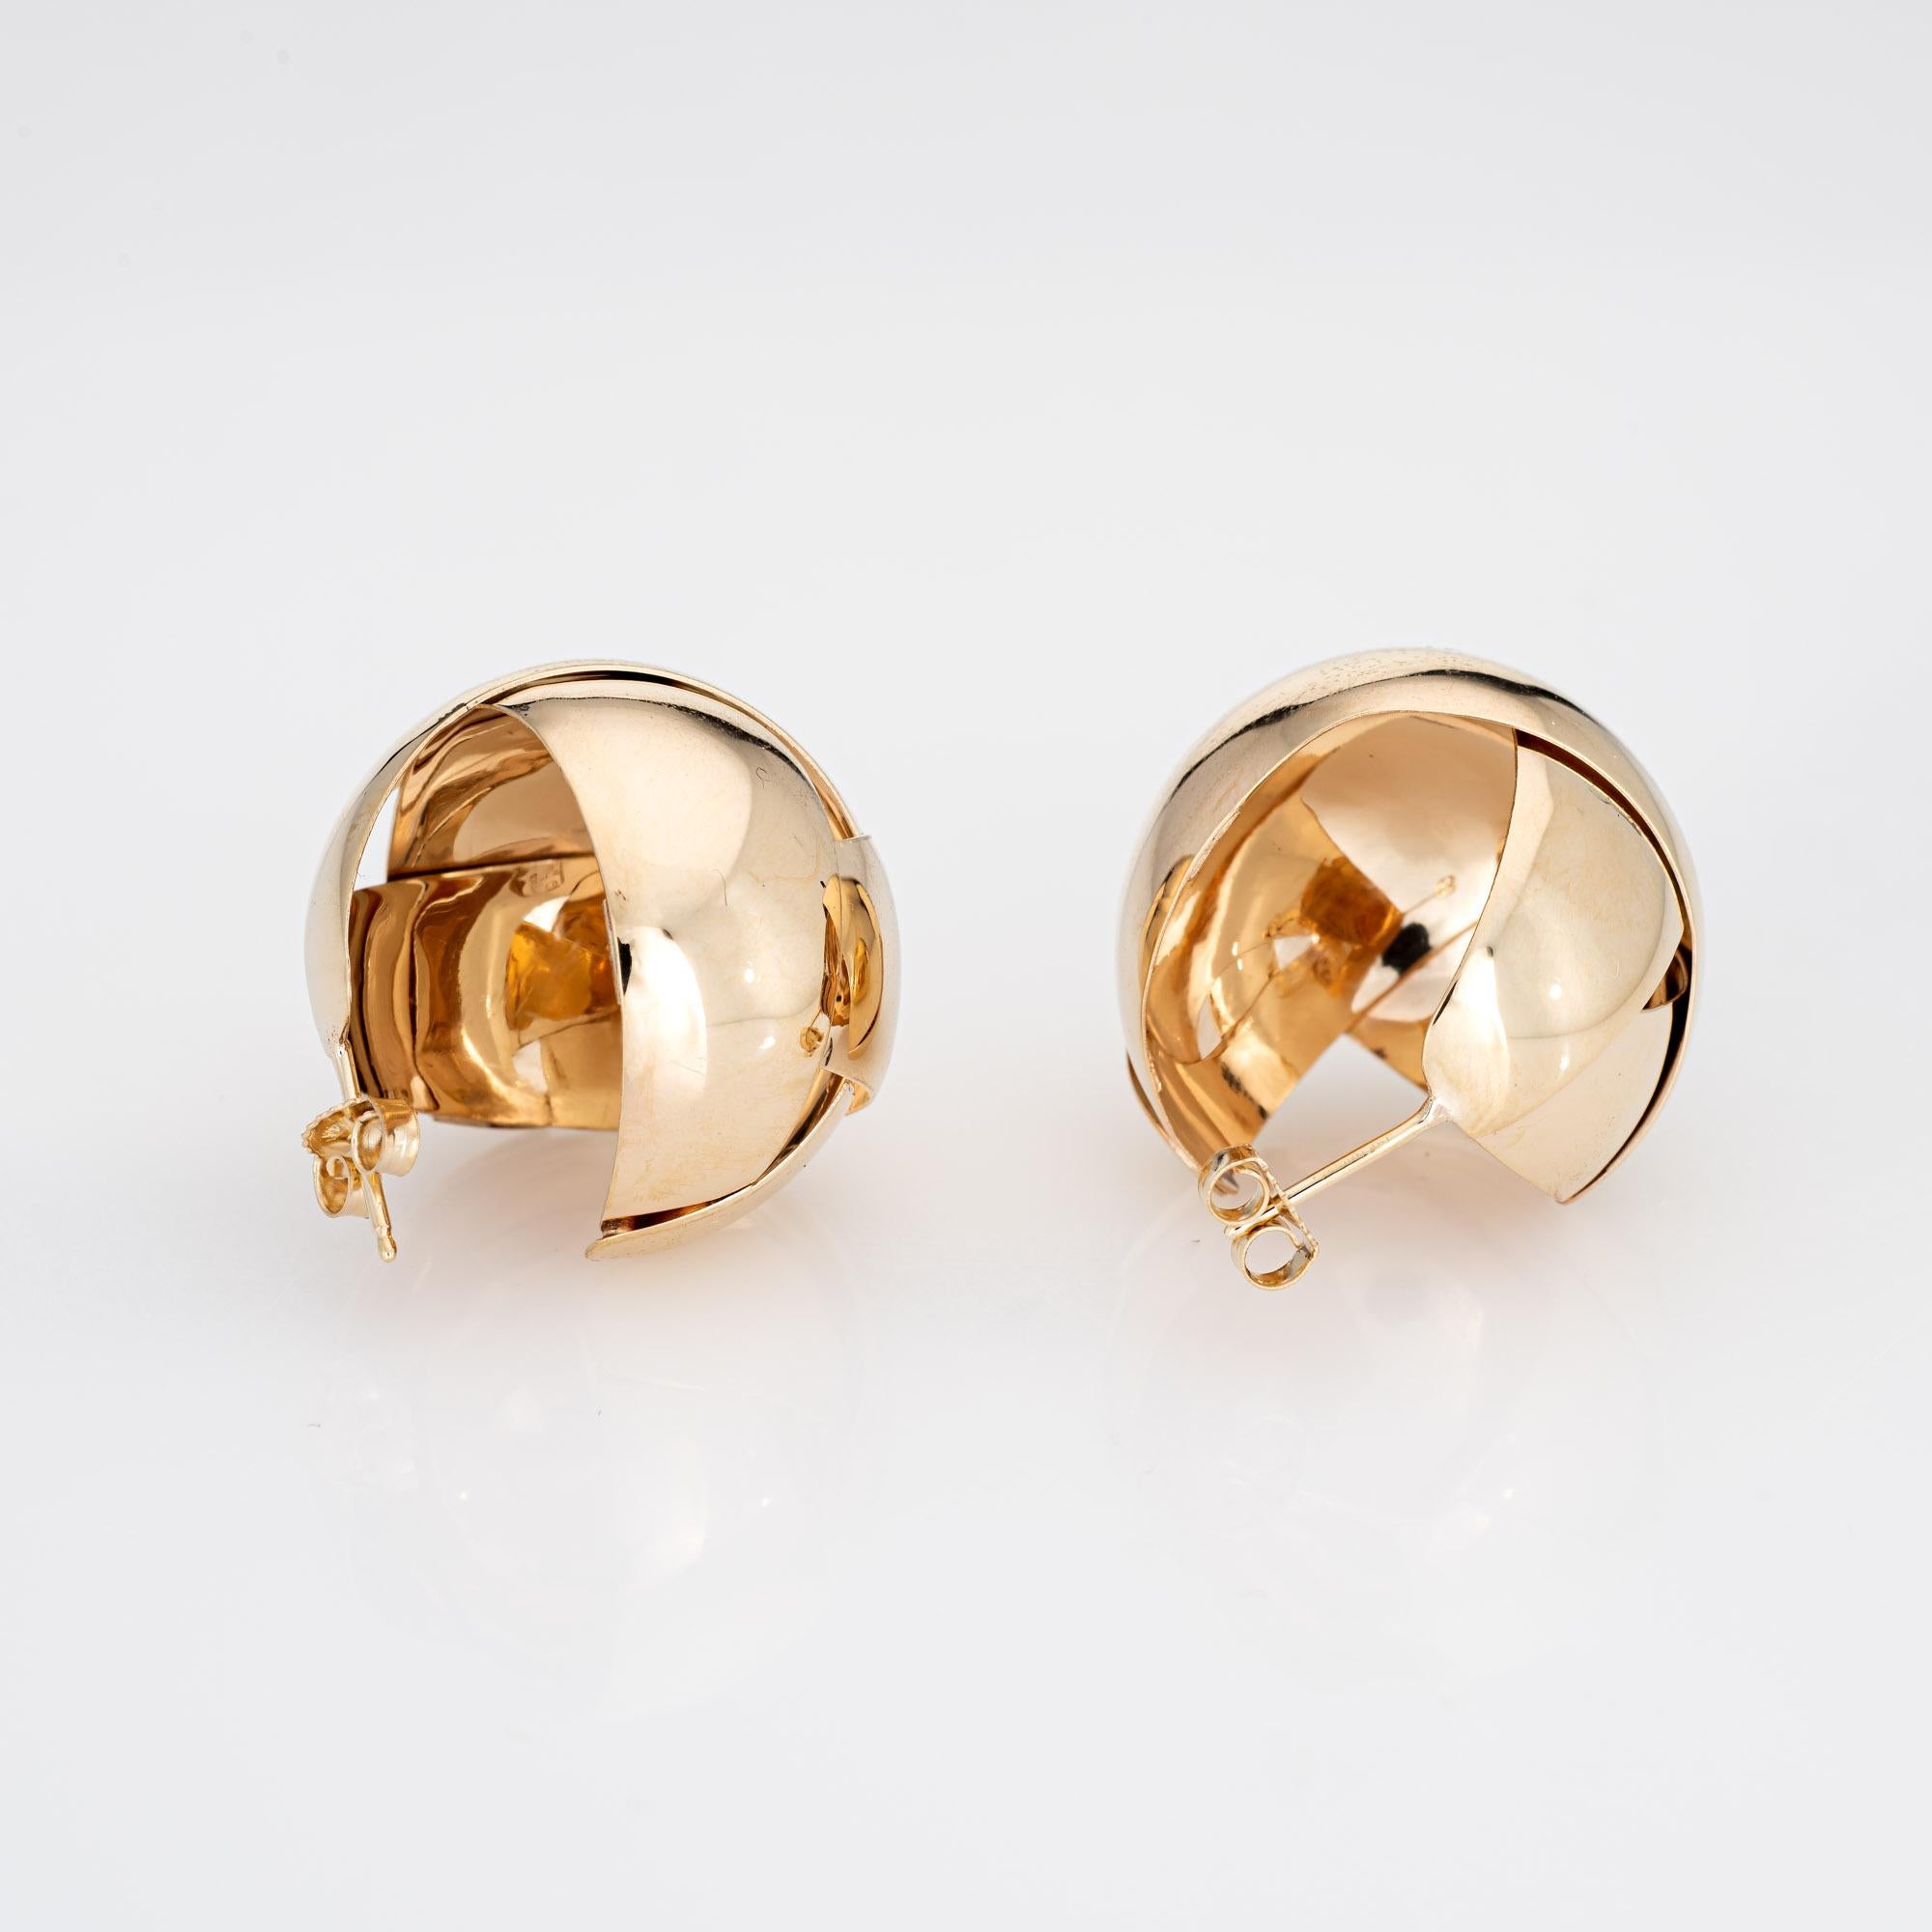 Elegantes Paar geflochtene große runde Kugelohrringe (ca. 1980er bis 1990er Jahre) aus 14-karätigem Gelbgold. 

Die eleganten Ohrringe sind in einem großen, runden, geflochtenen Design (0,90 Zoll) gefertigt und setzen einen tollen Akzent am